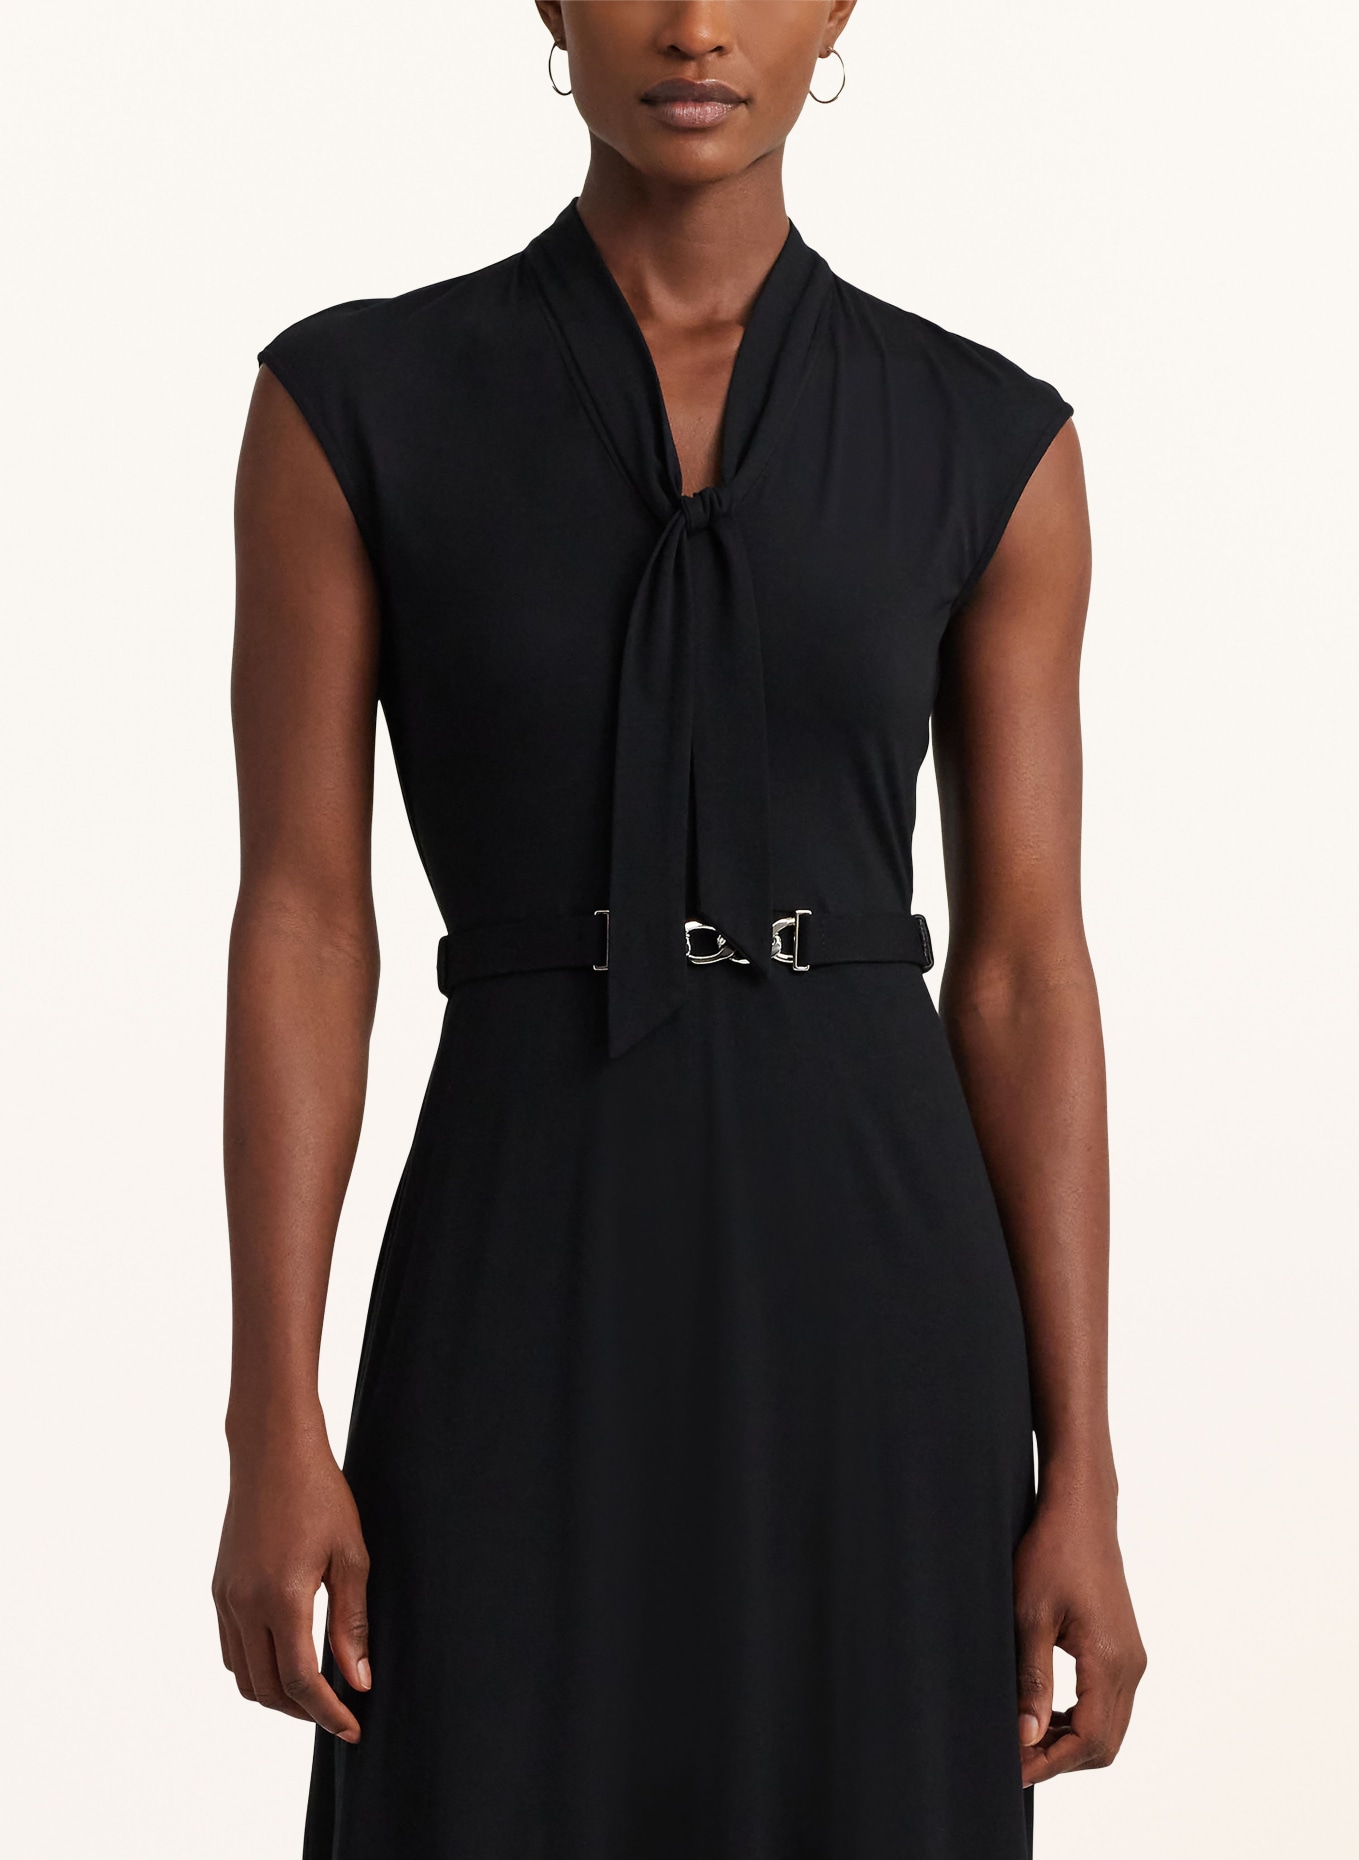 LAUREN RALPH LAUREN Bow-tie collar dress in jersey, Color: BLACK (Image 4)